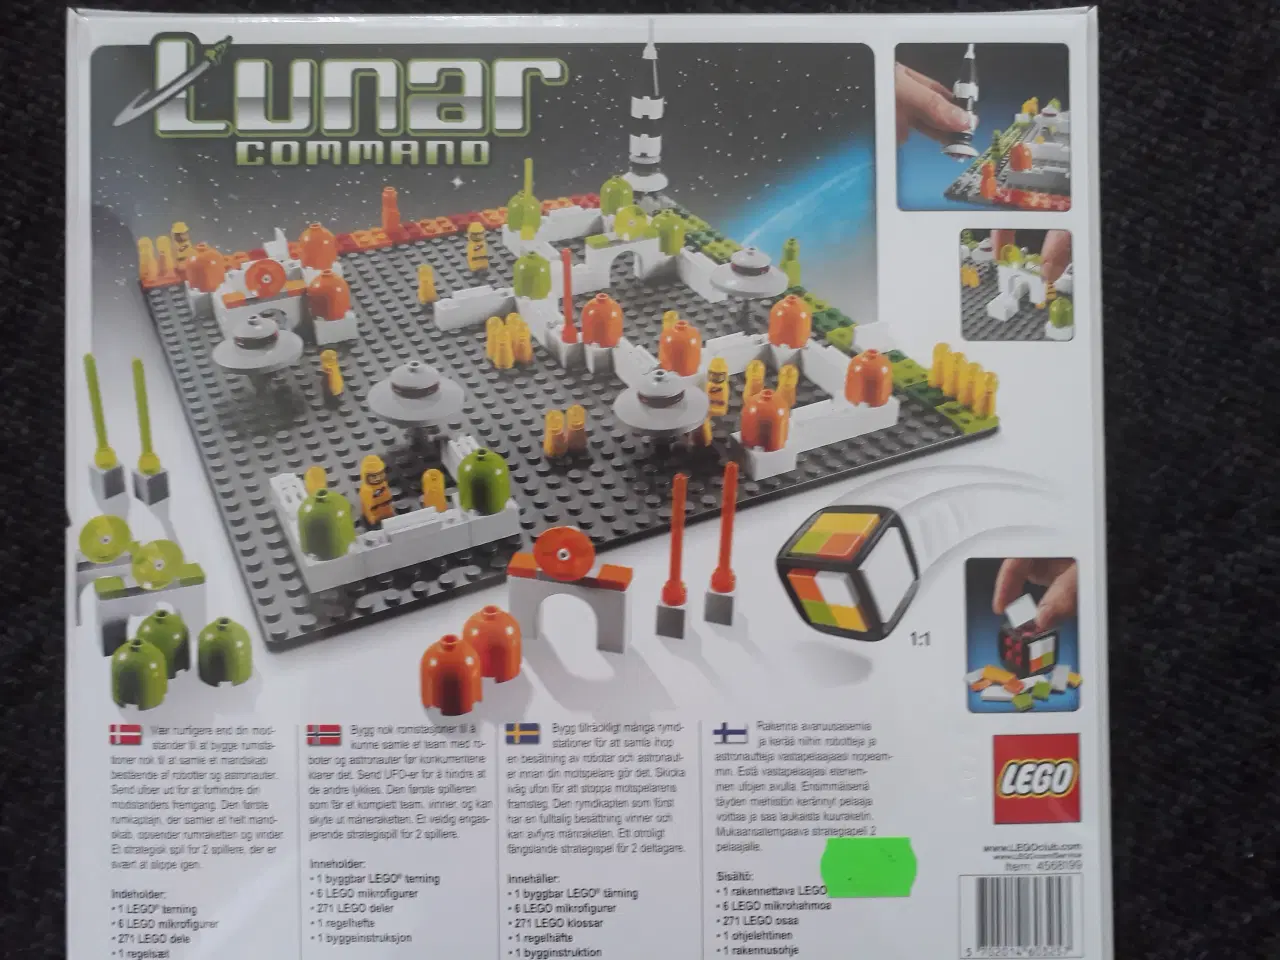 Billede 2 - Spil - Lego Lunar Command